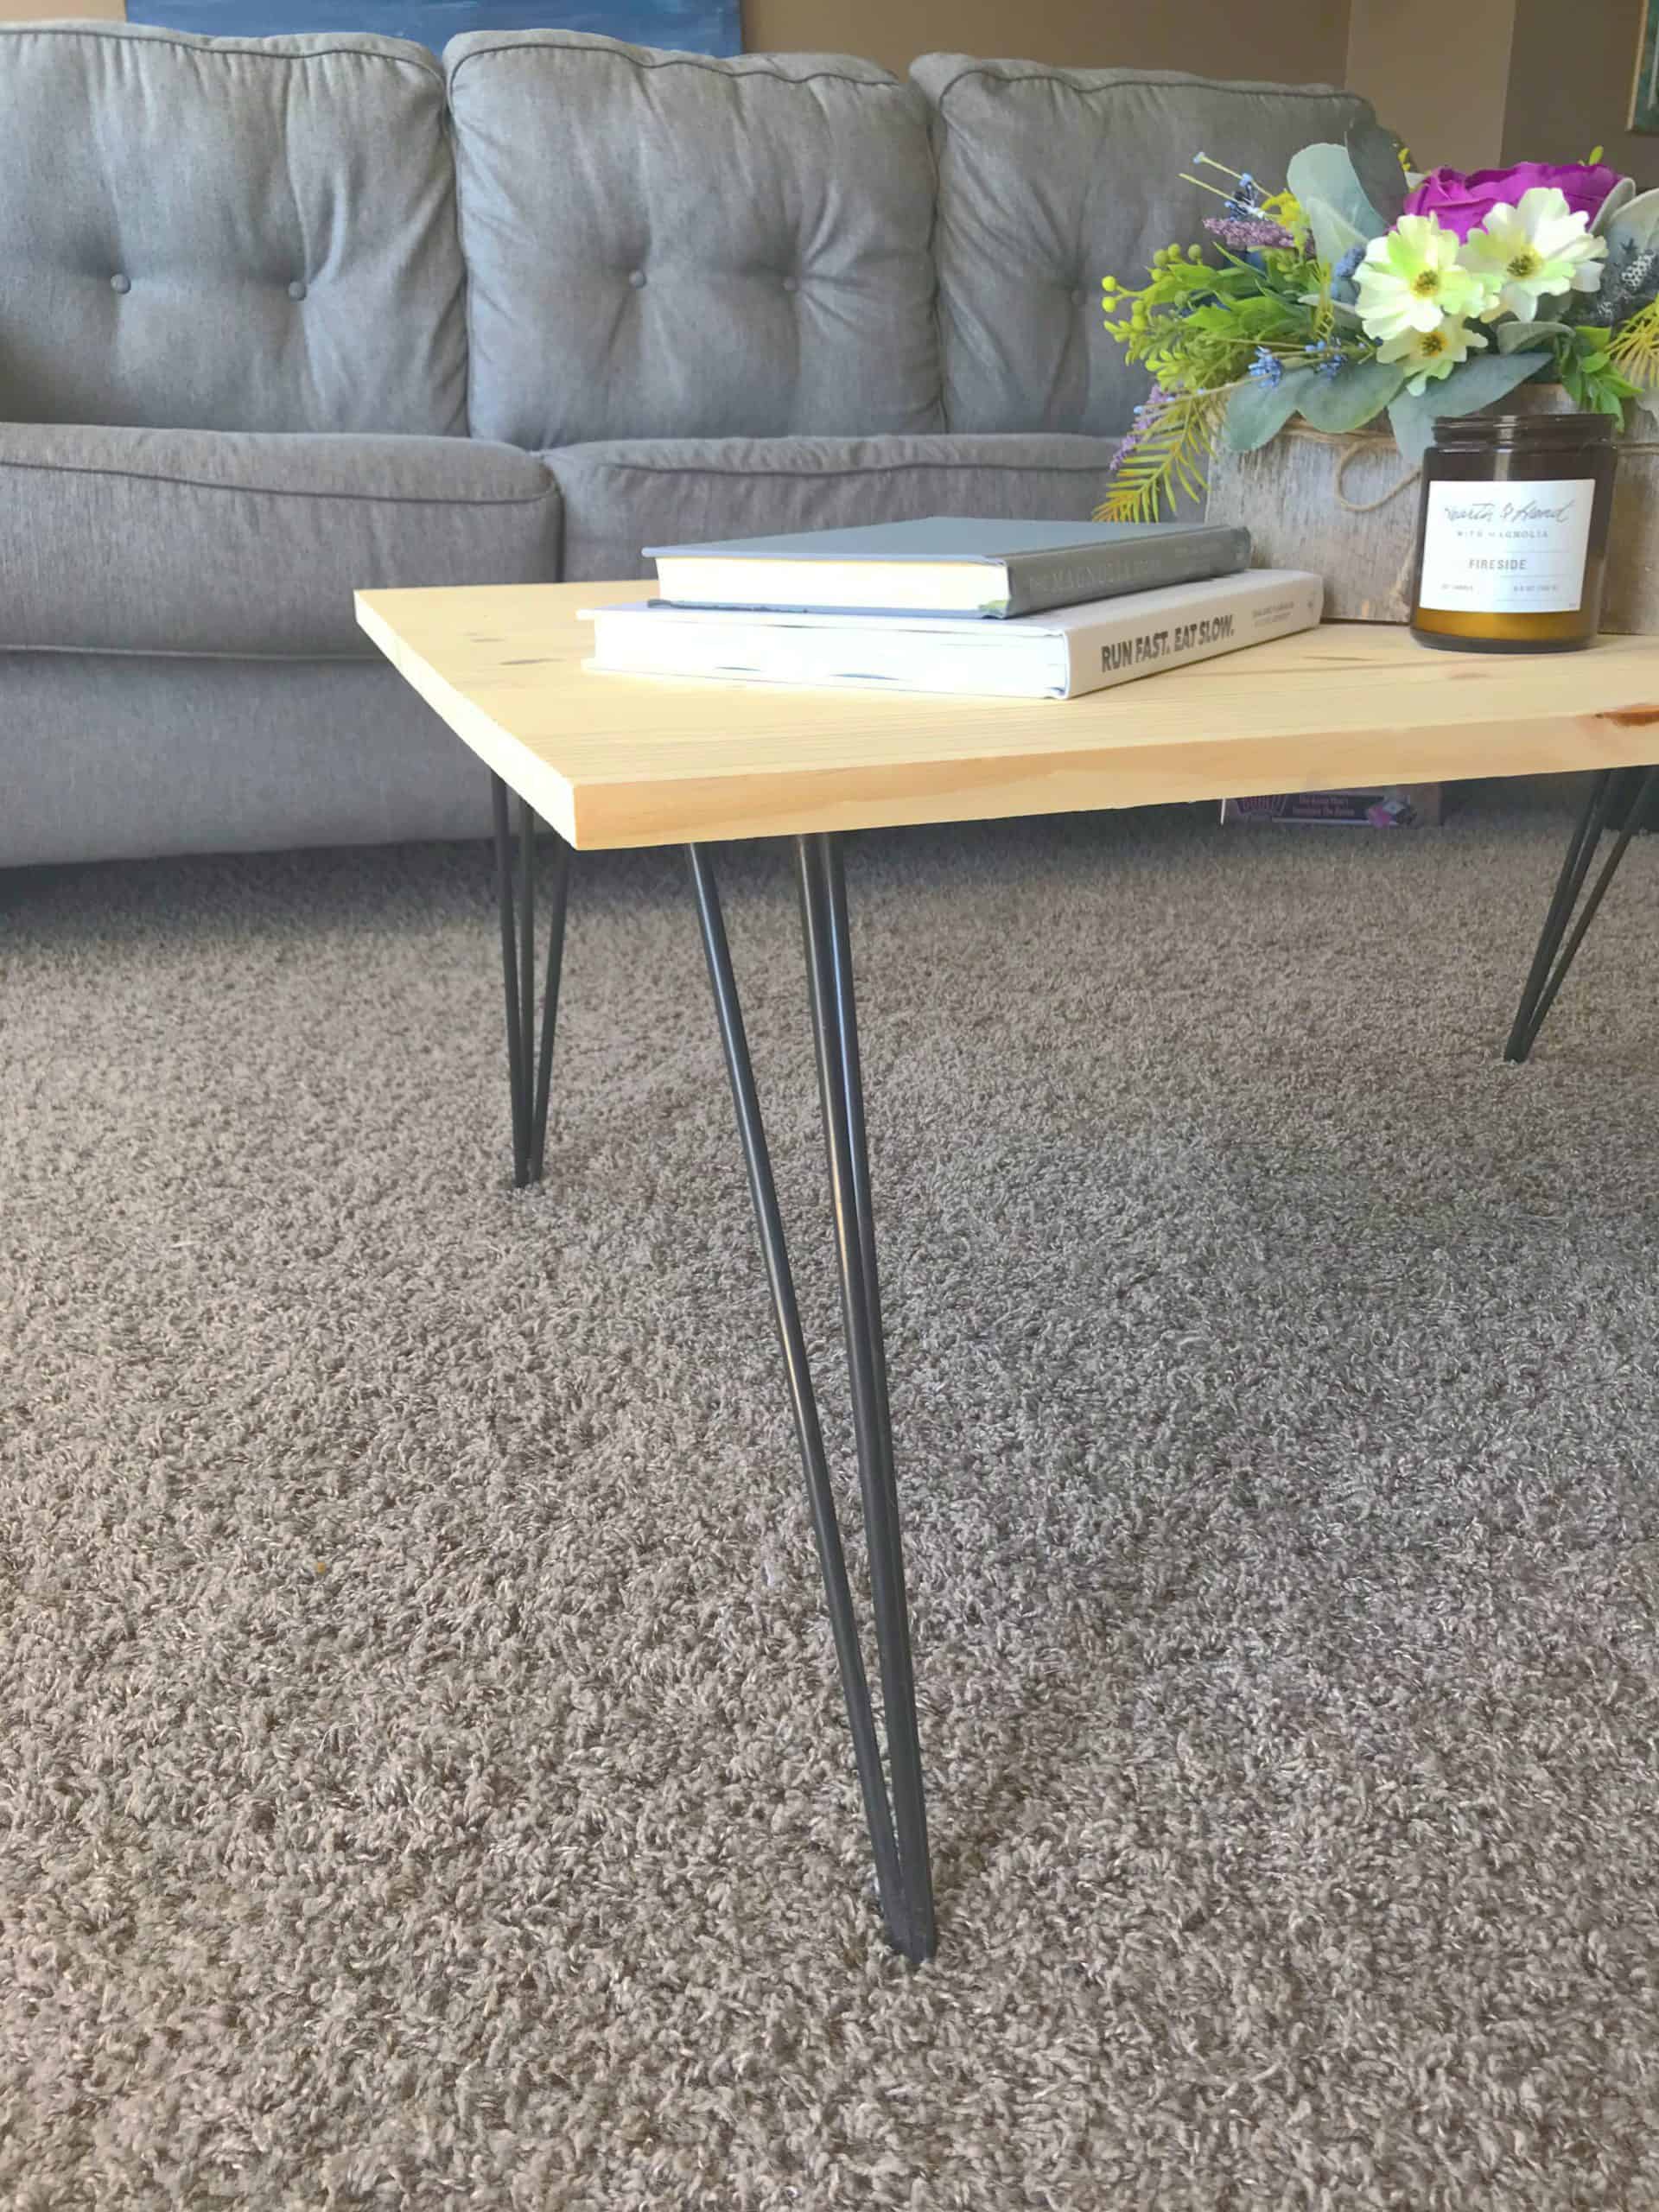 DIY Hairpin Leg Coffee Table